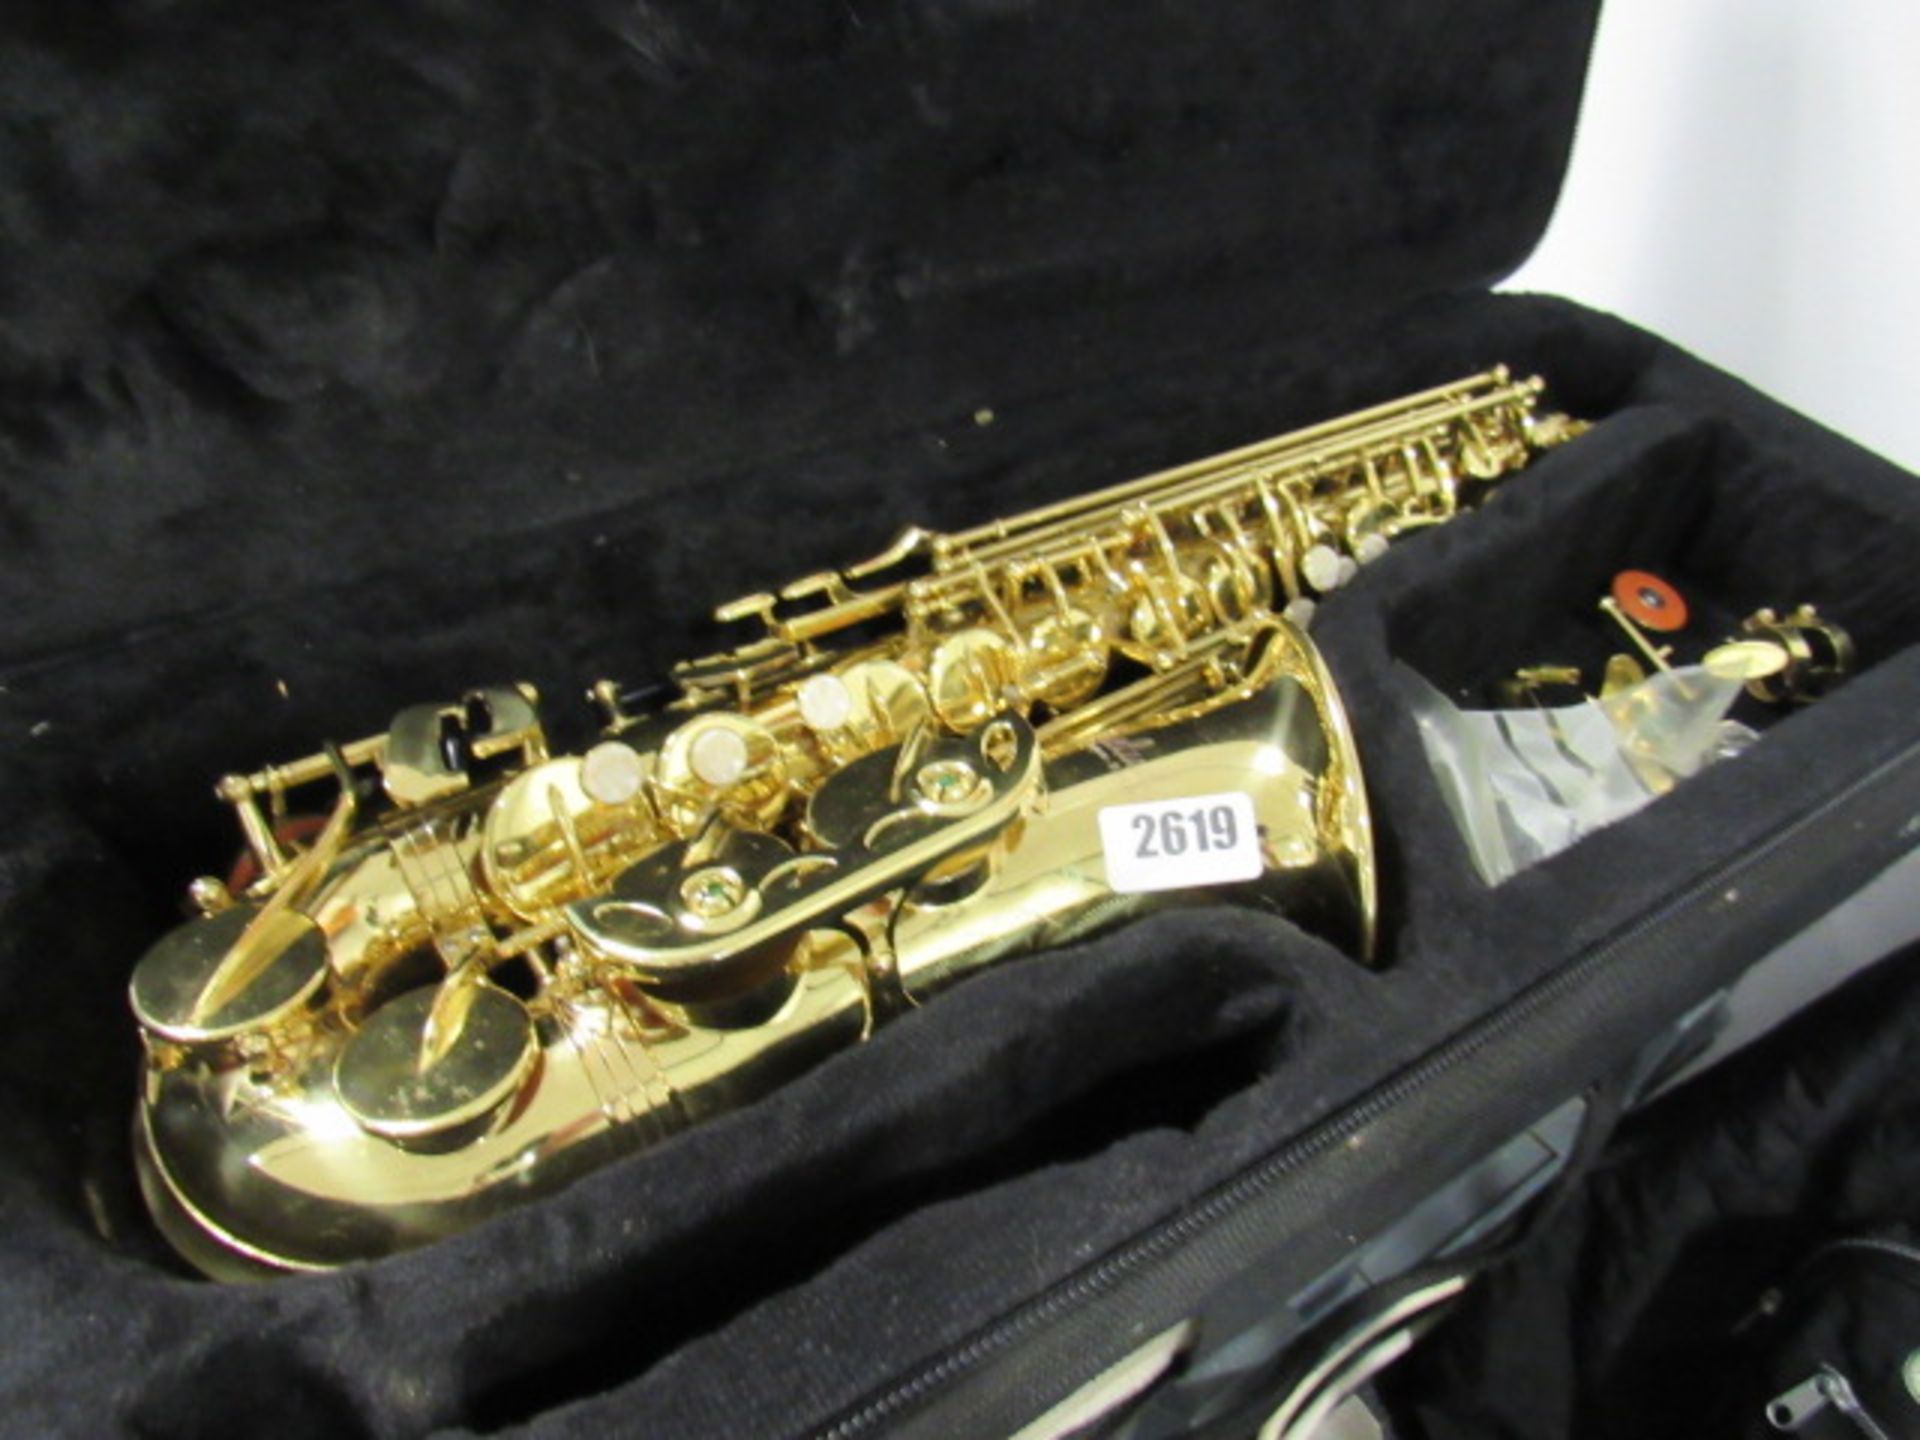 Prelude Conn Selmer tenor saxophone (incomplete)